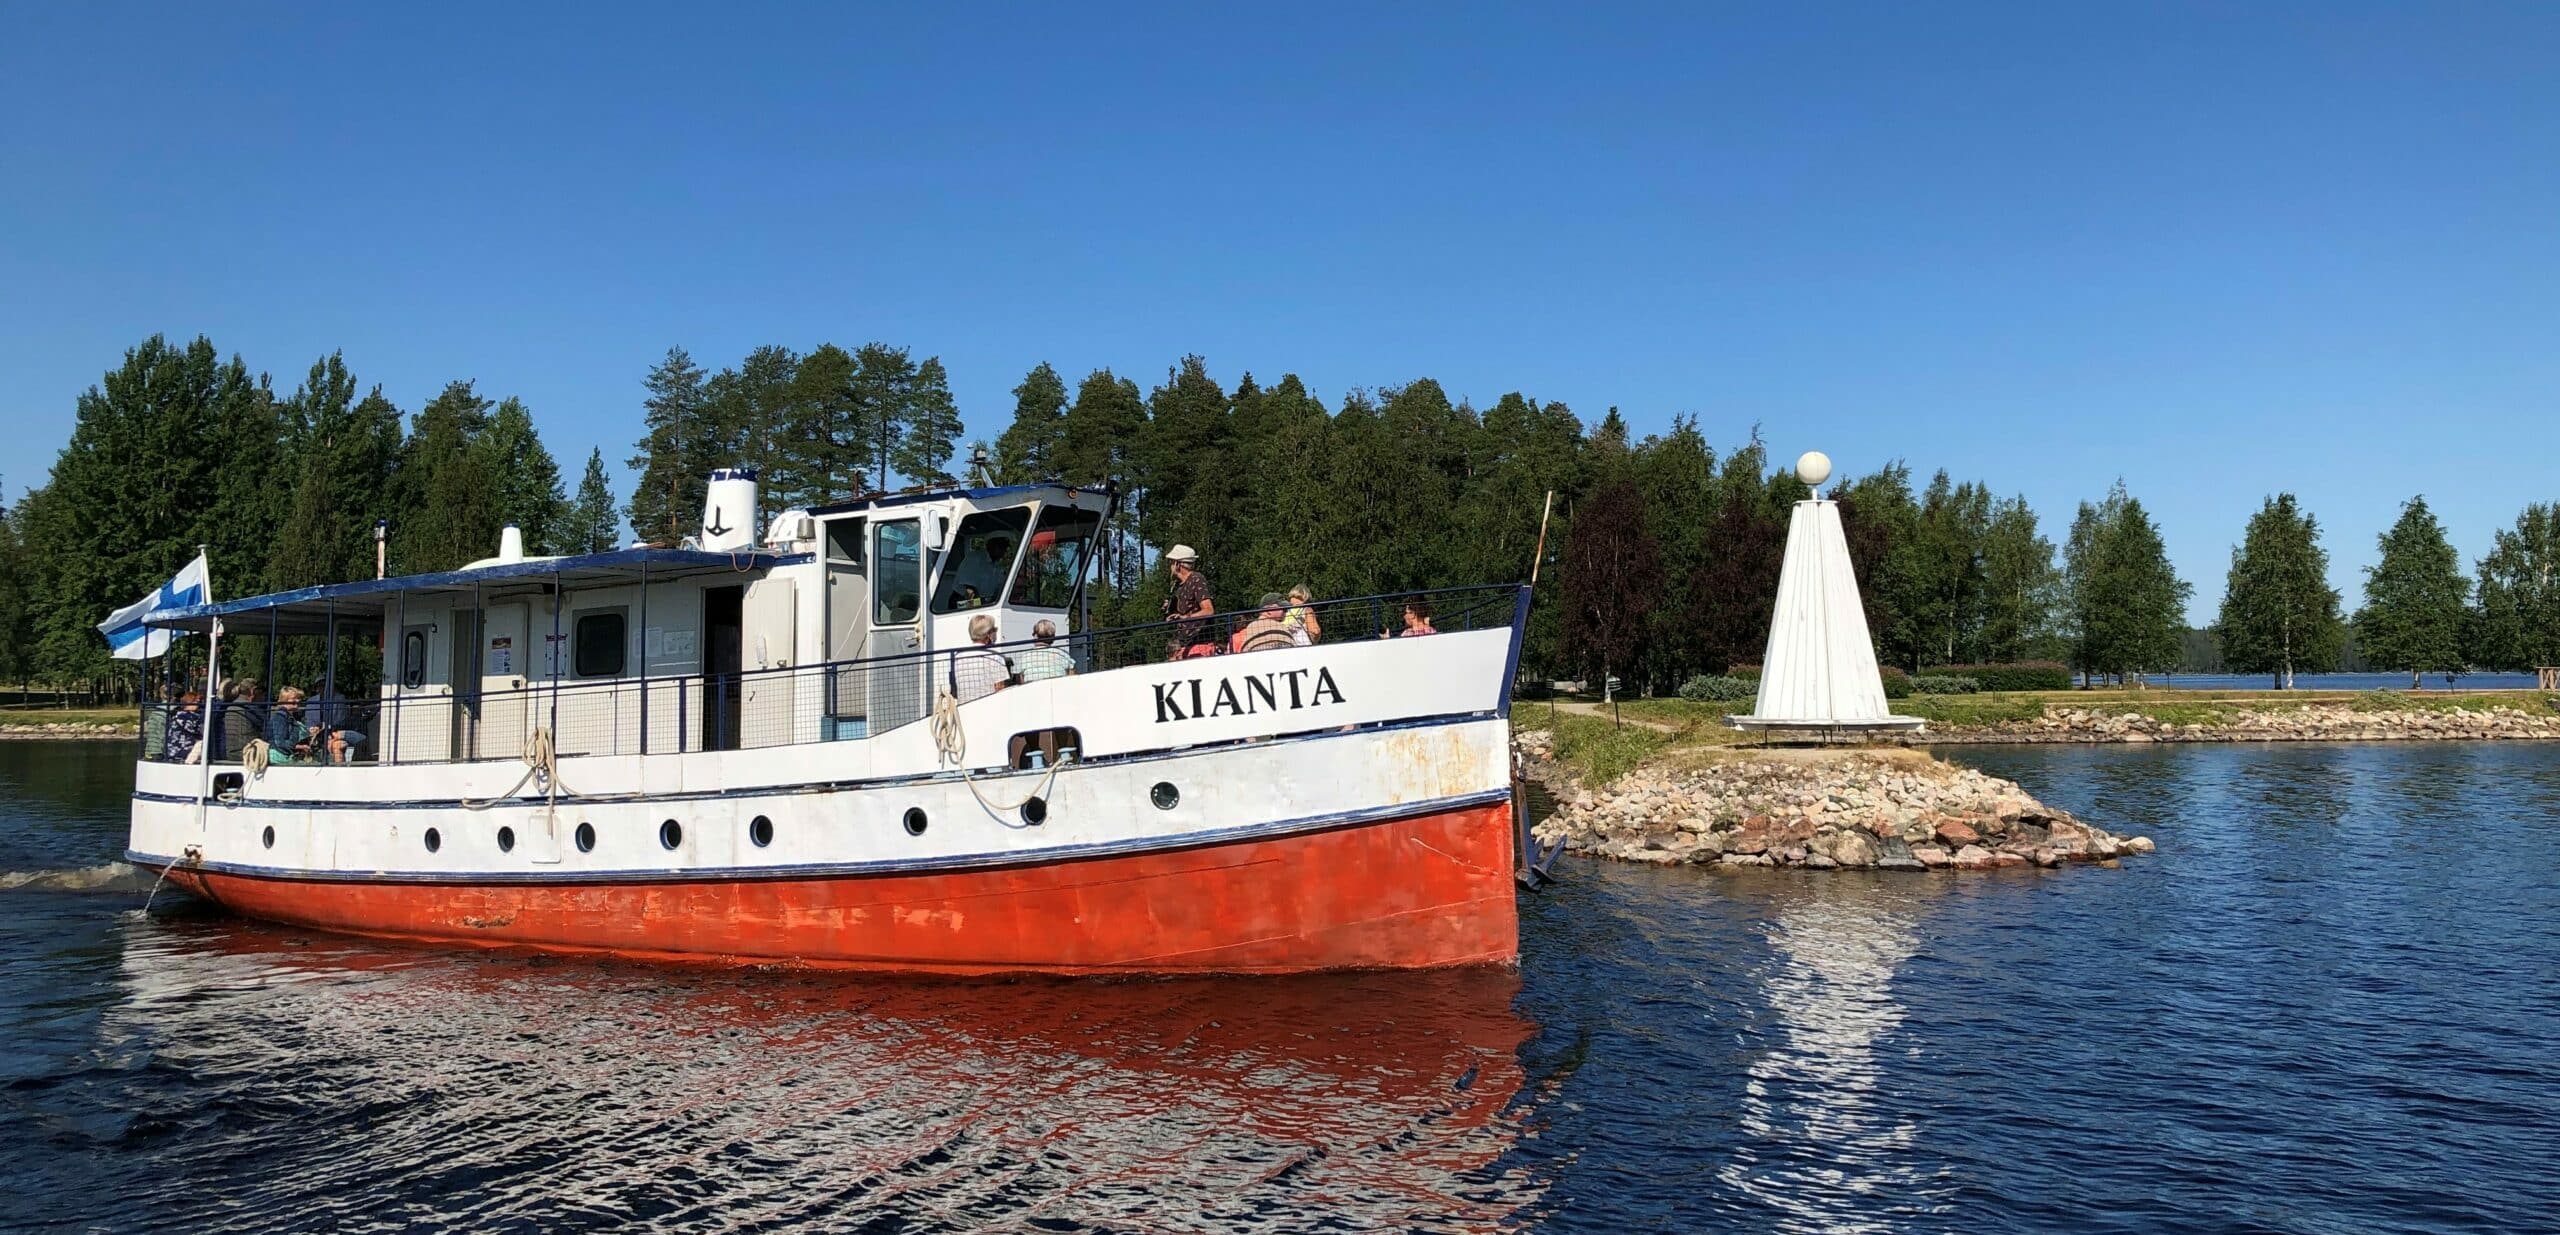 Kianta-laiva Kiantajärvellä.